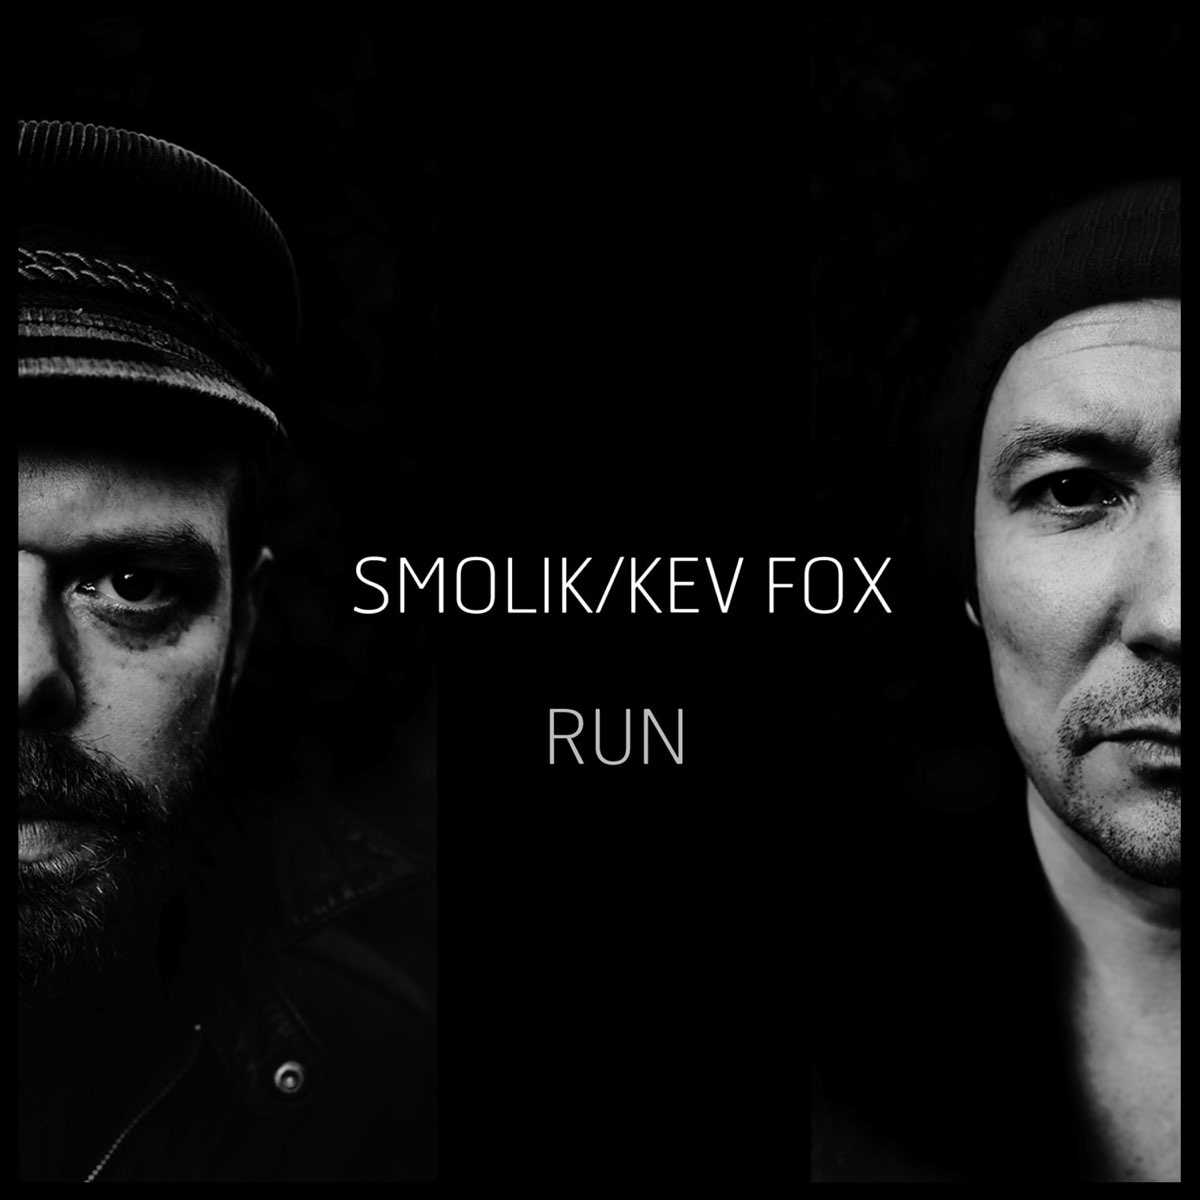 Fox on the run. Smolik музыкант.